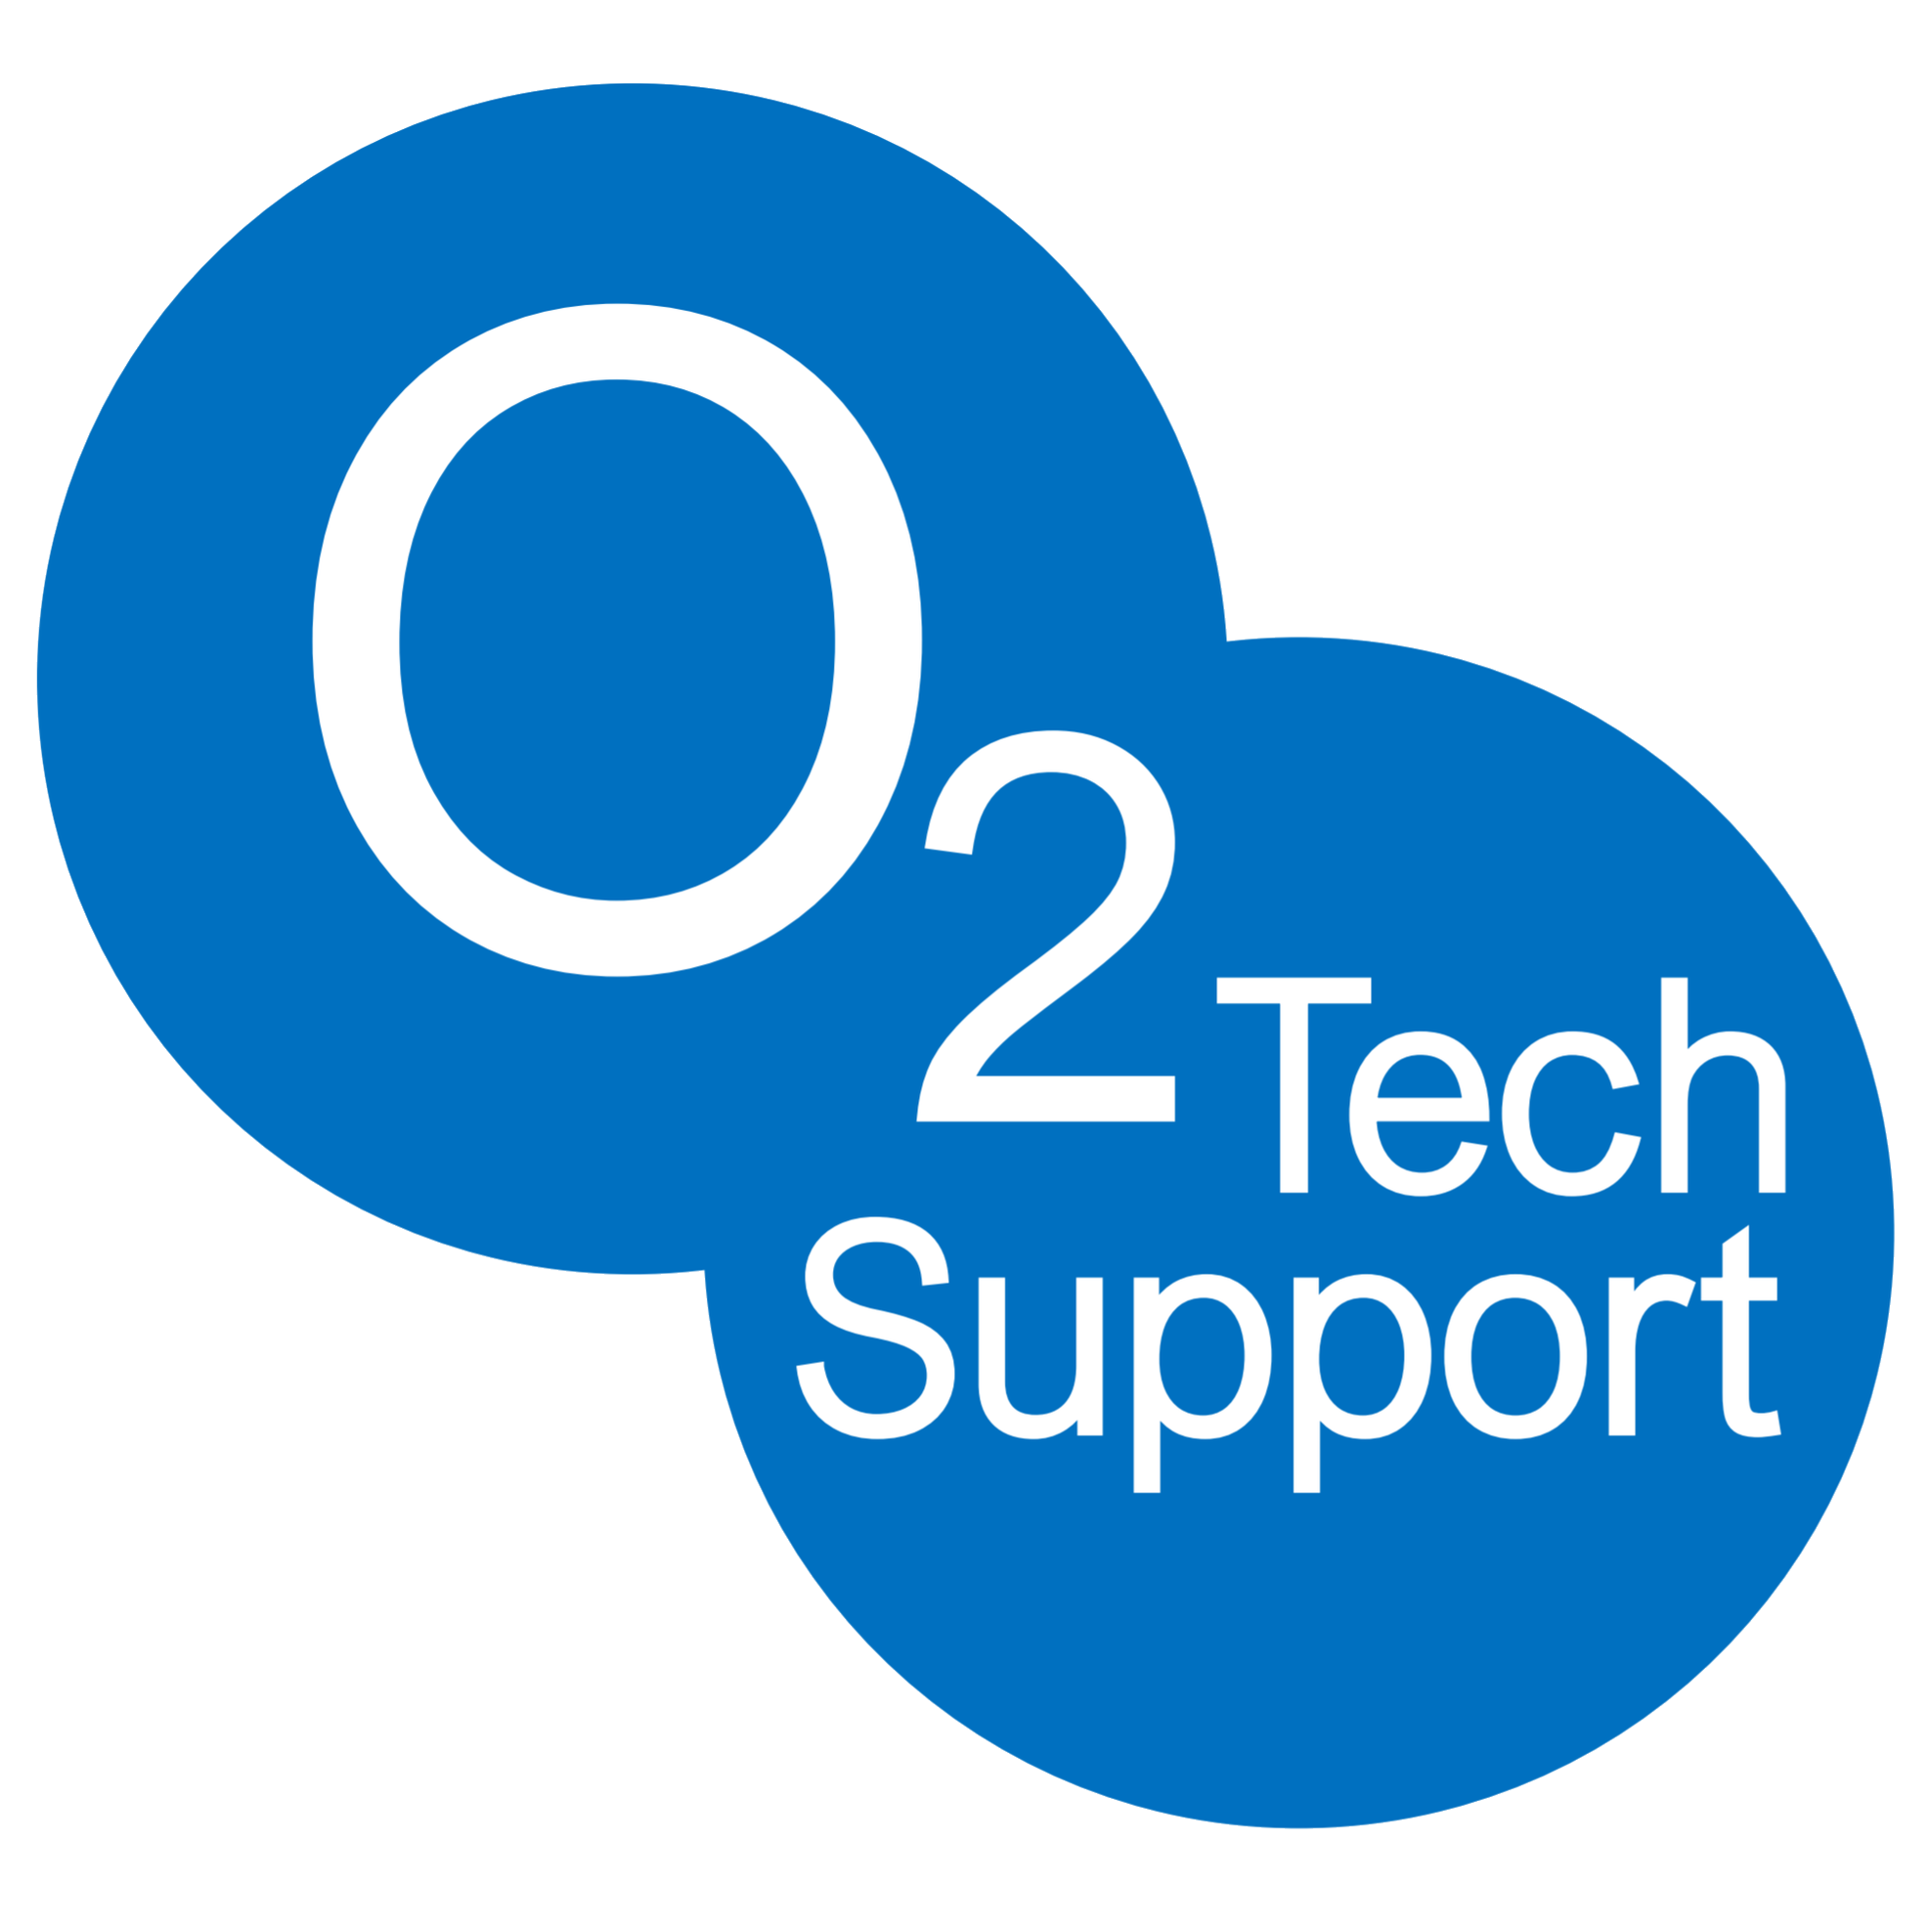 O2 Tech Support Logo